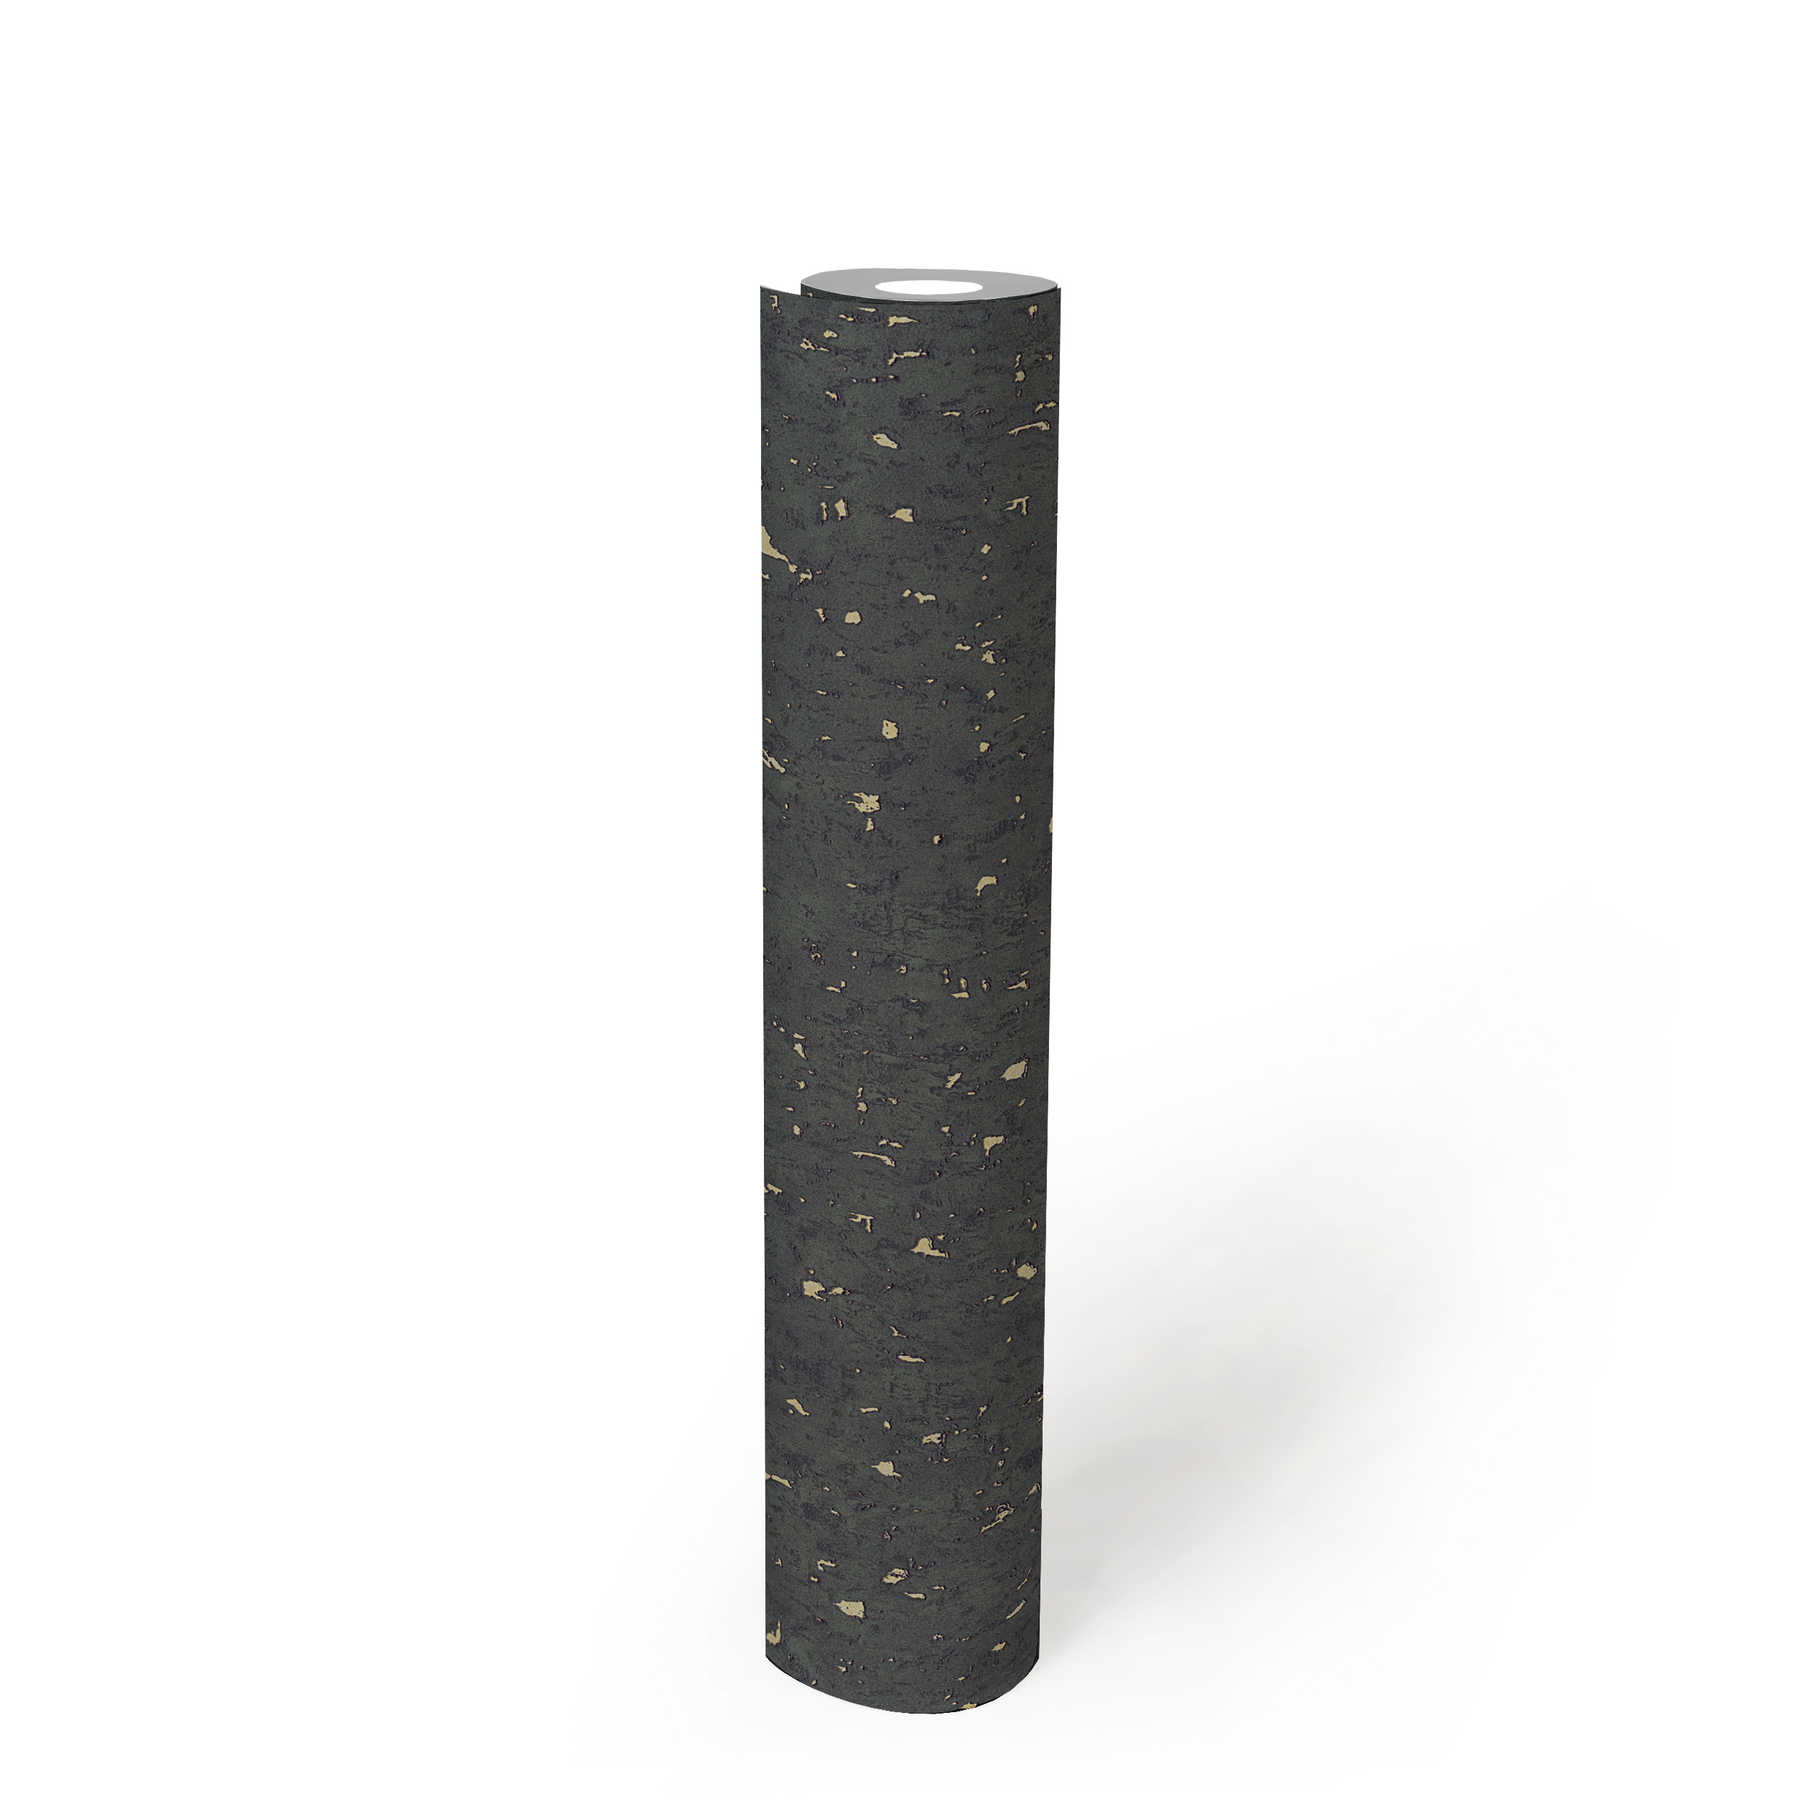             Vliesbehang kurk-look met metallic effect - zwart, metallic, goud
        